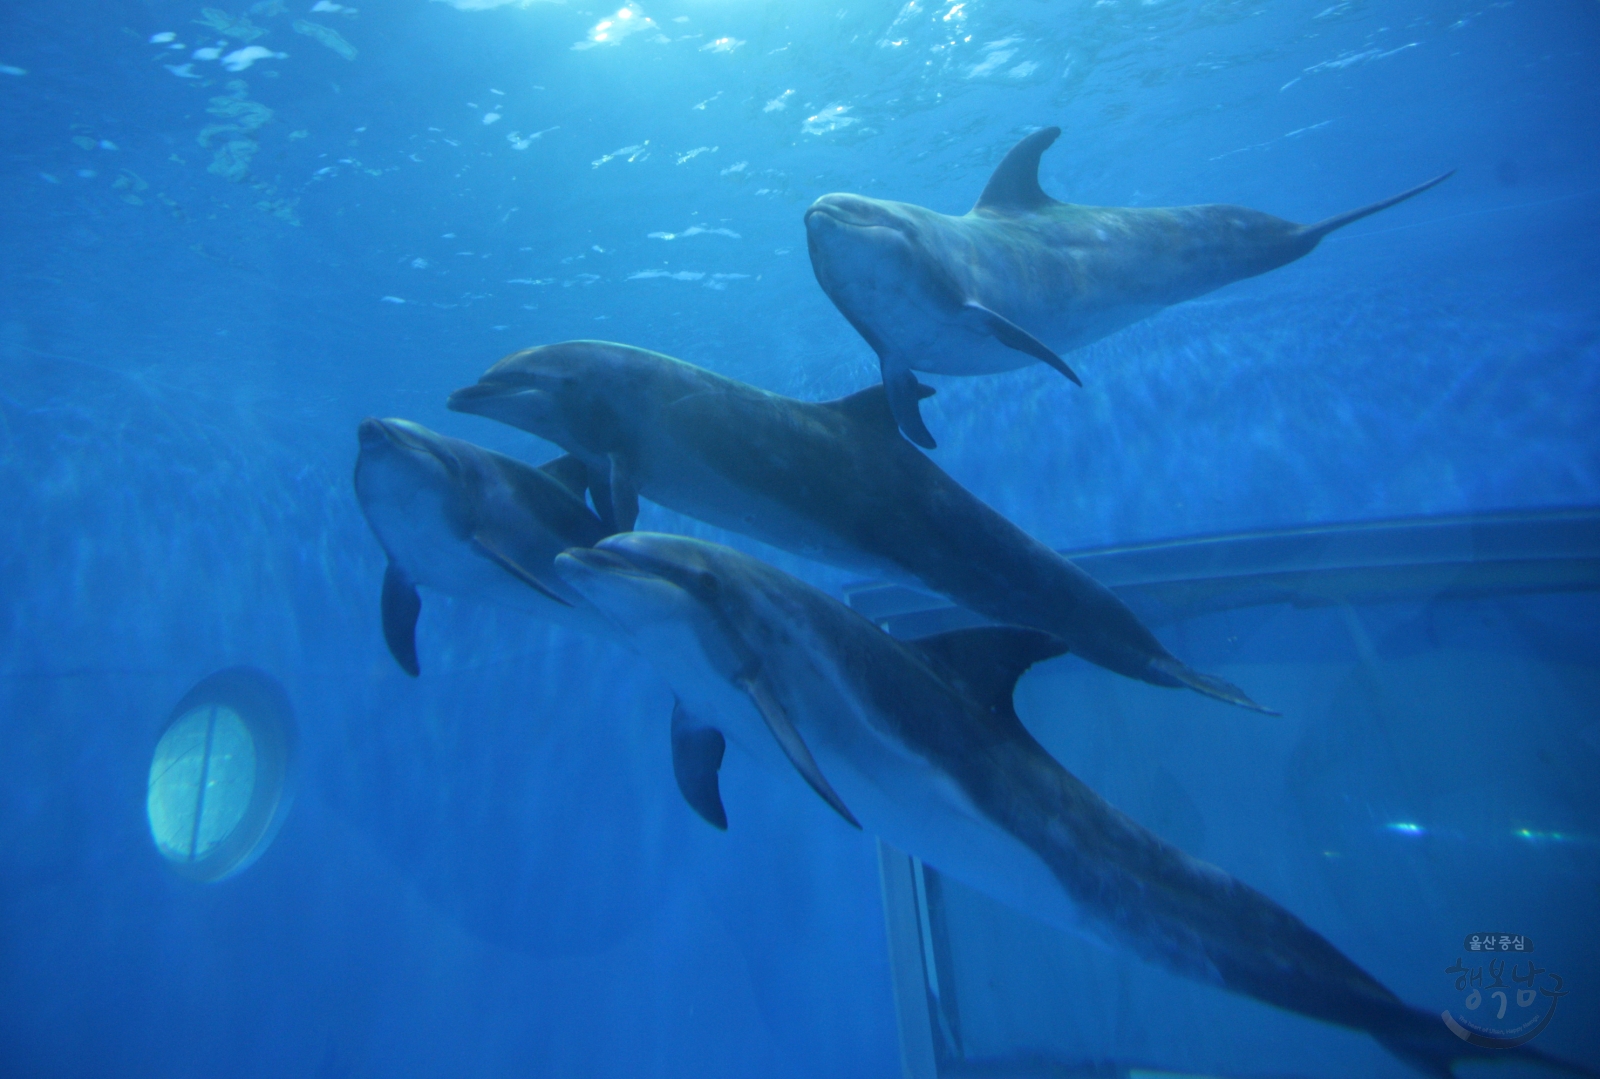 고래생태체험관 고래입수 의 사진